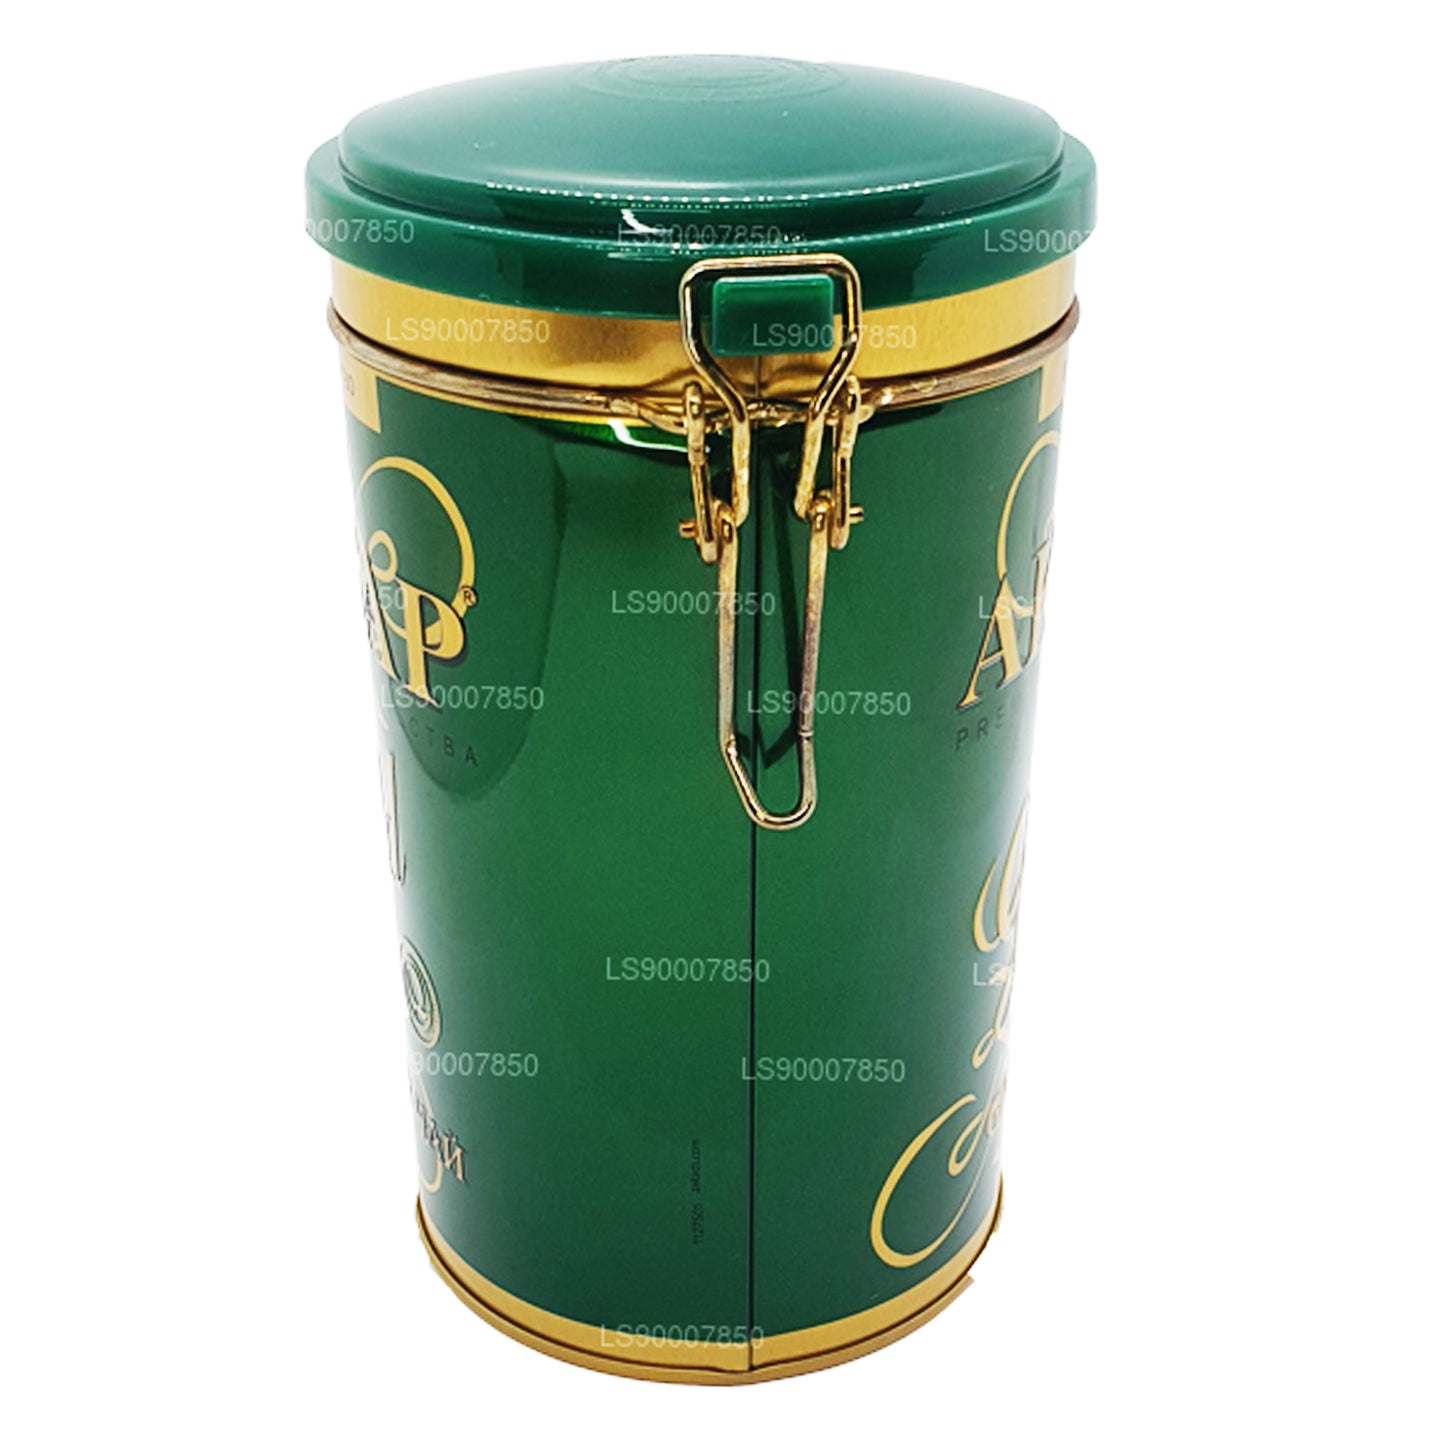 Té de hojas de té verde Akbar Gold (275 g) en lata